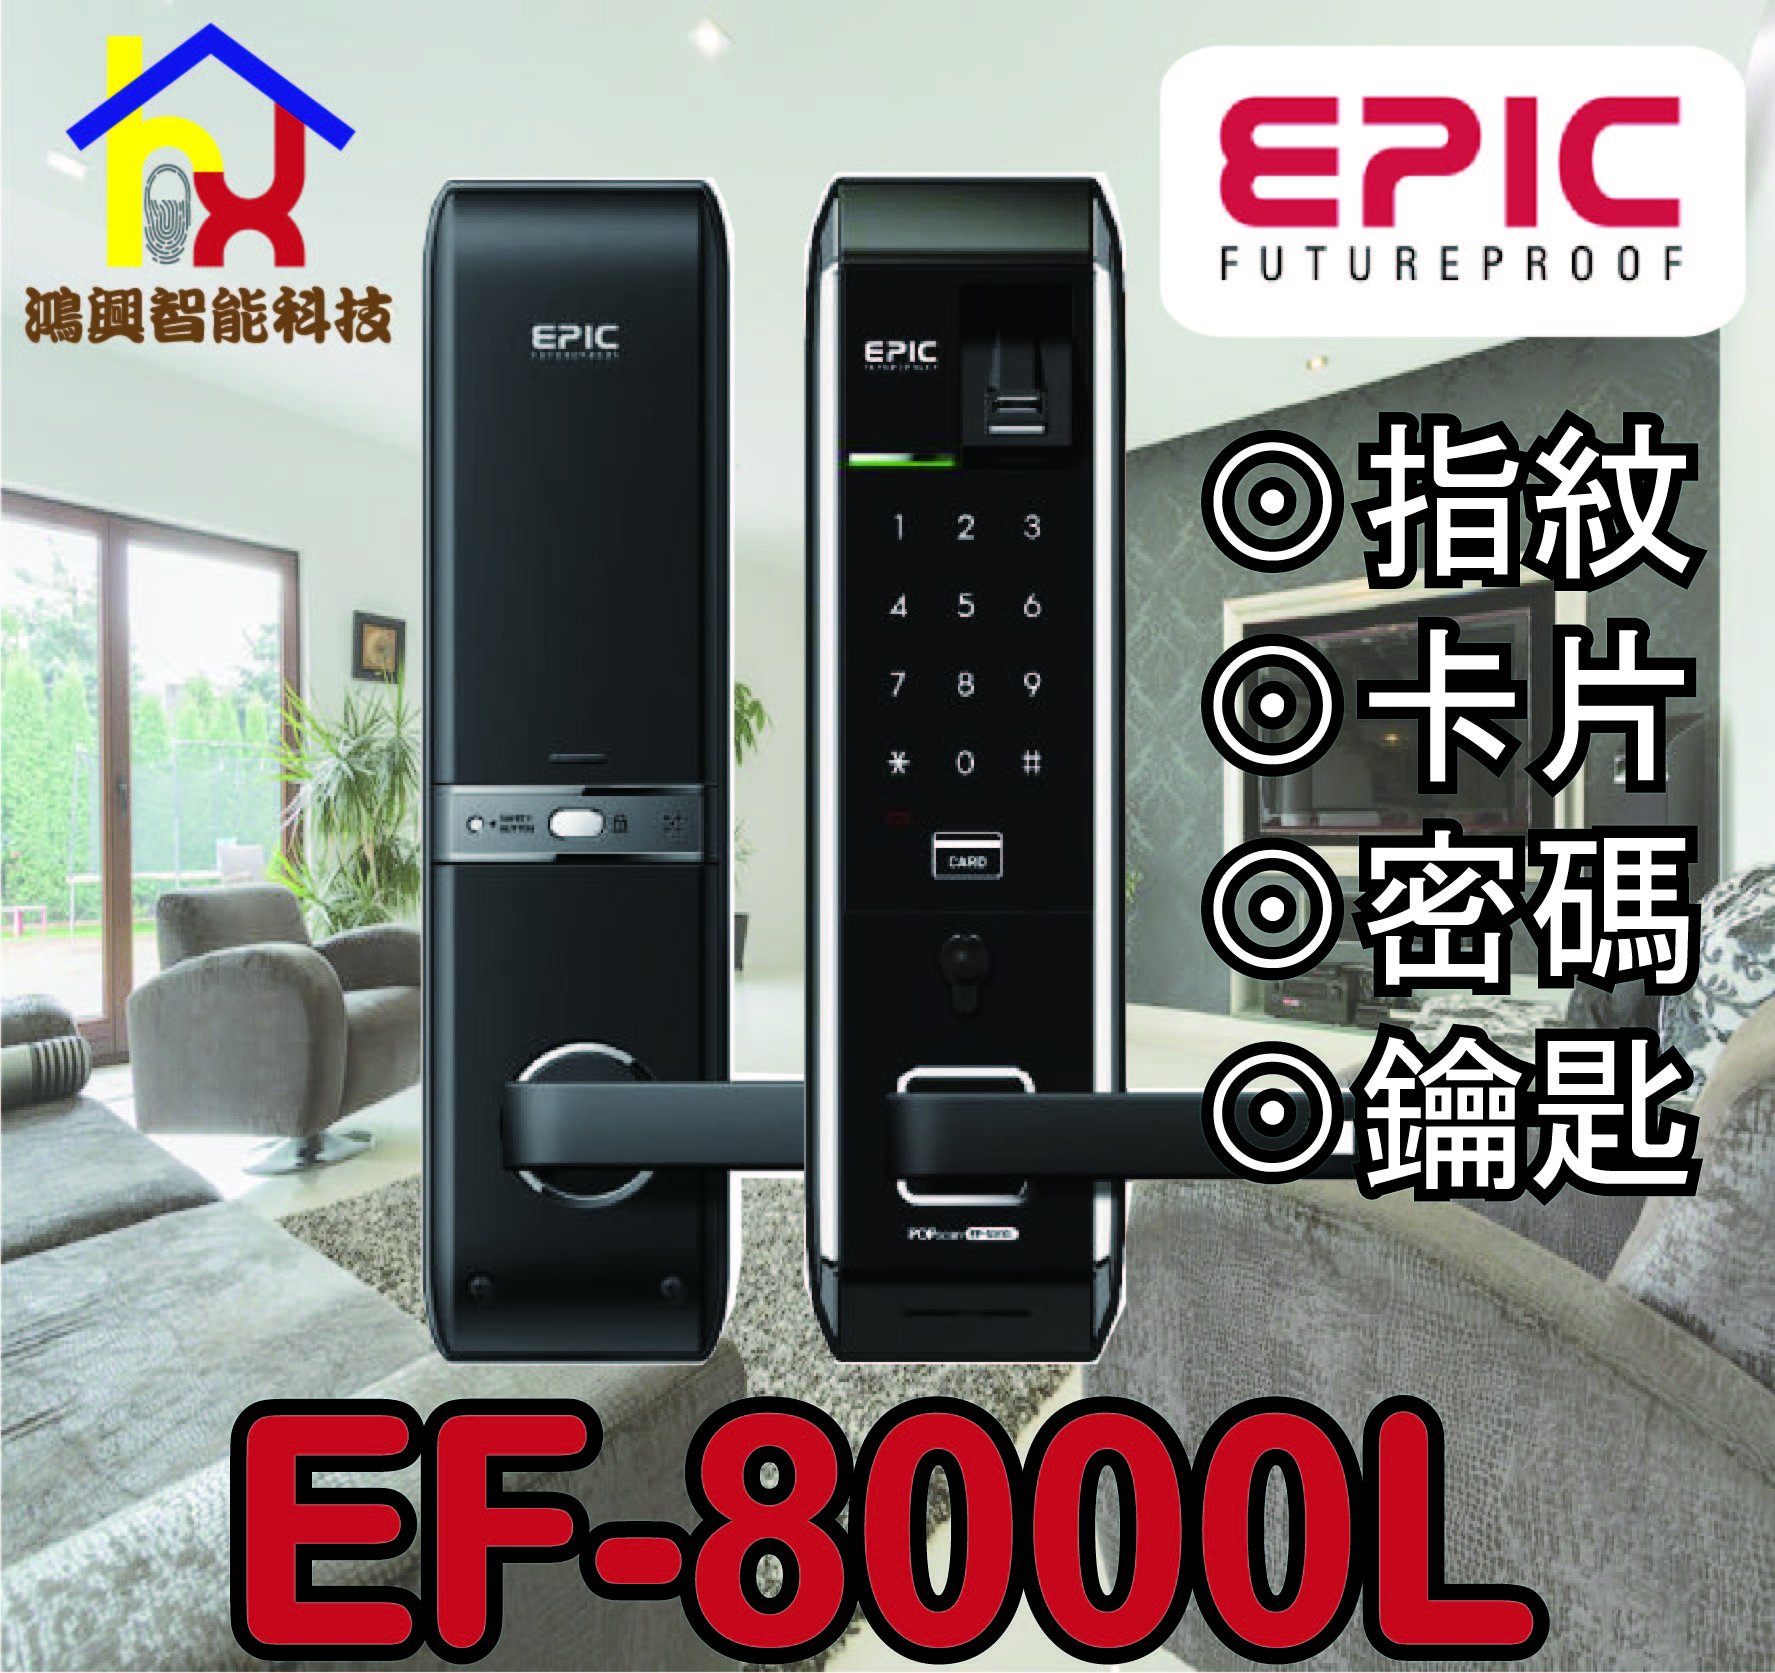 スマートロック EF-8000L EPIC 暗証番号 指紋認証-